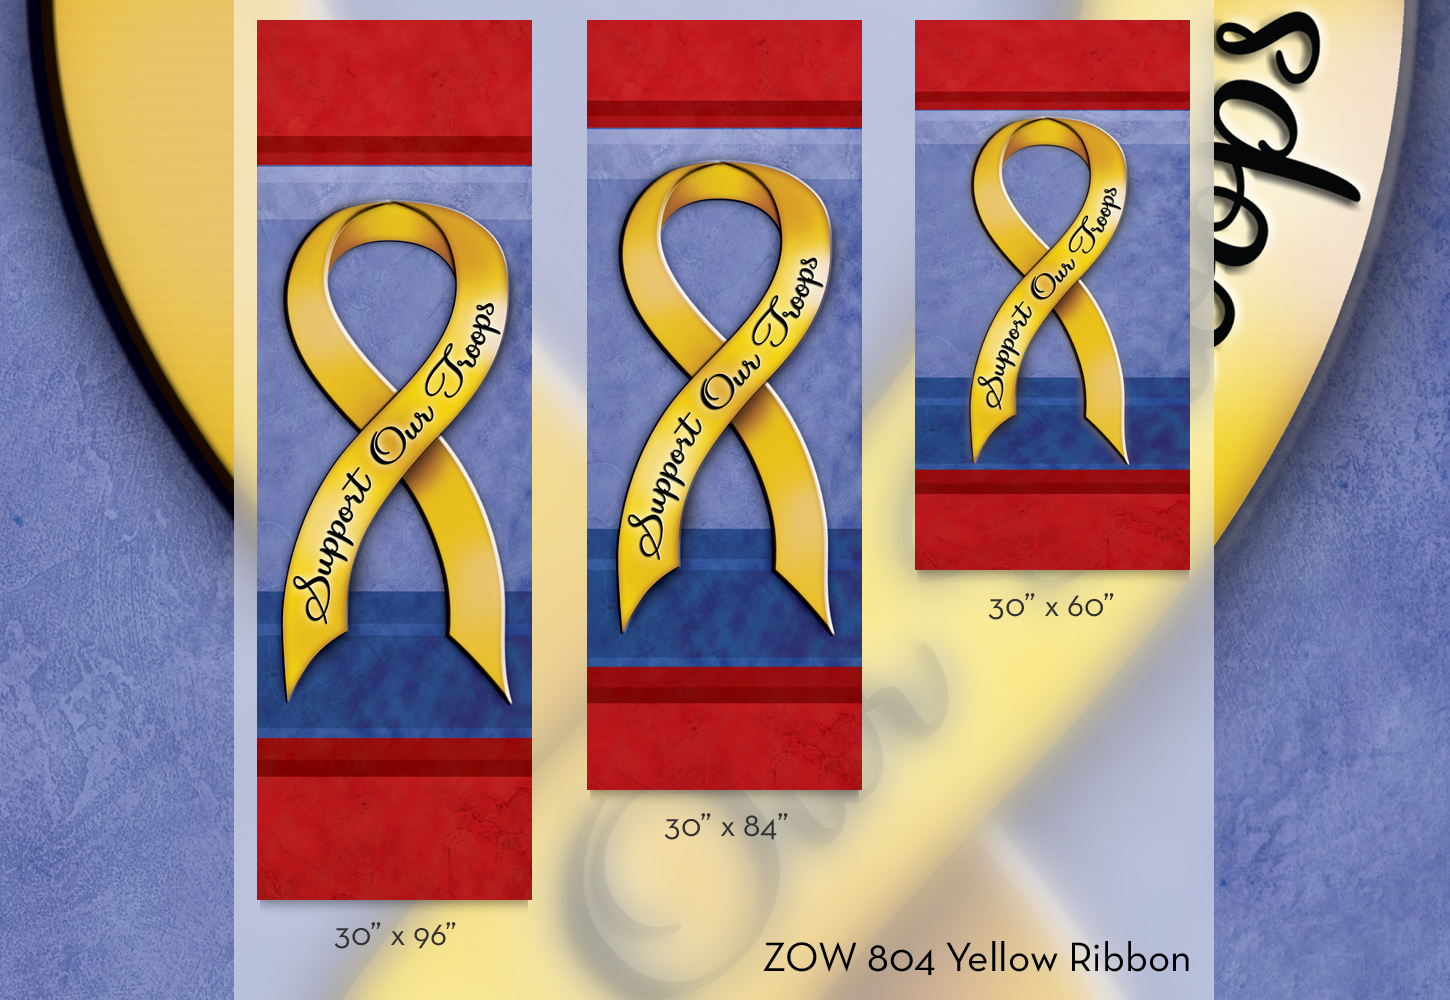 ZOW 804 Yellow Ribbon